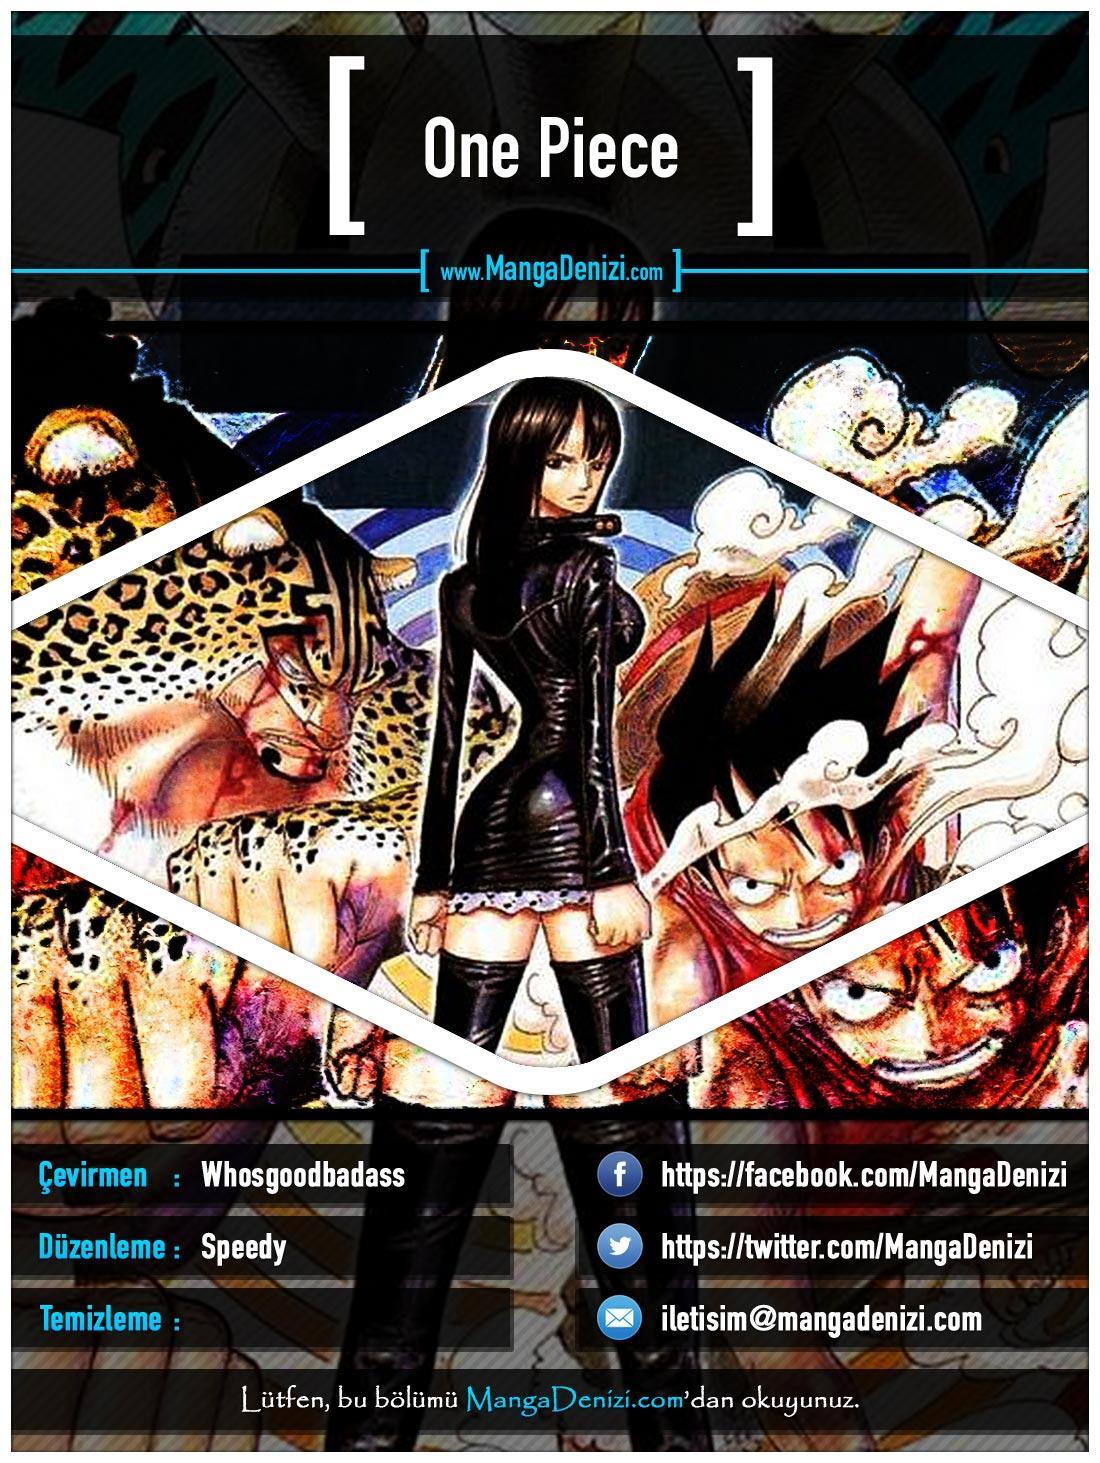 One Piece [Renkli] mangasının 0440 bölümünün 1. sayfasını okuyorsunuz.